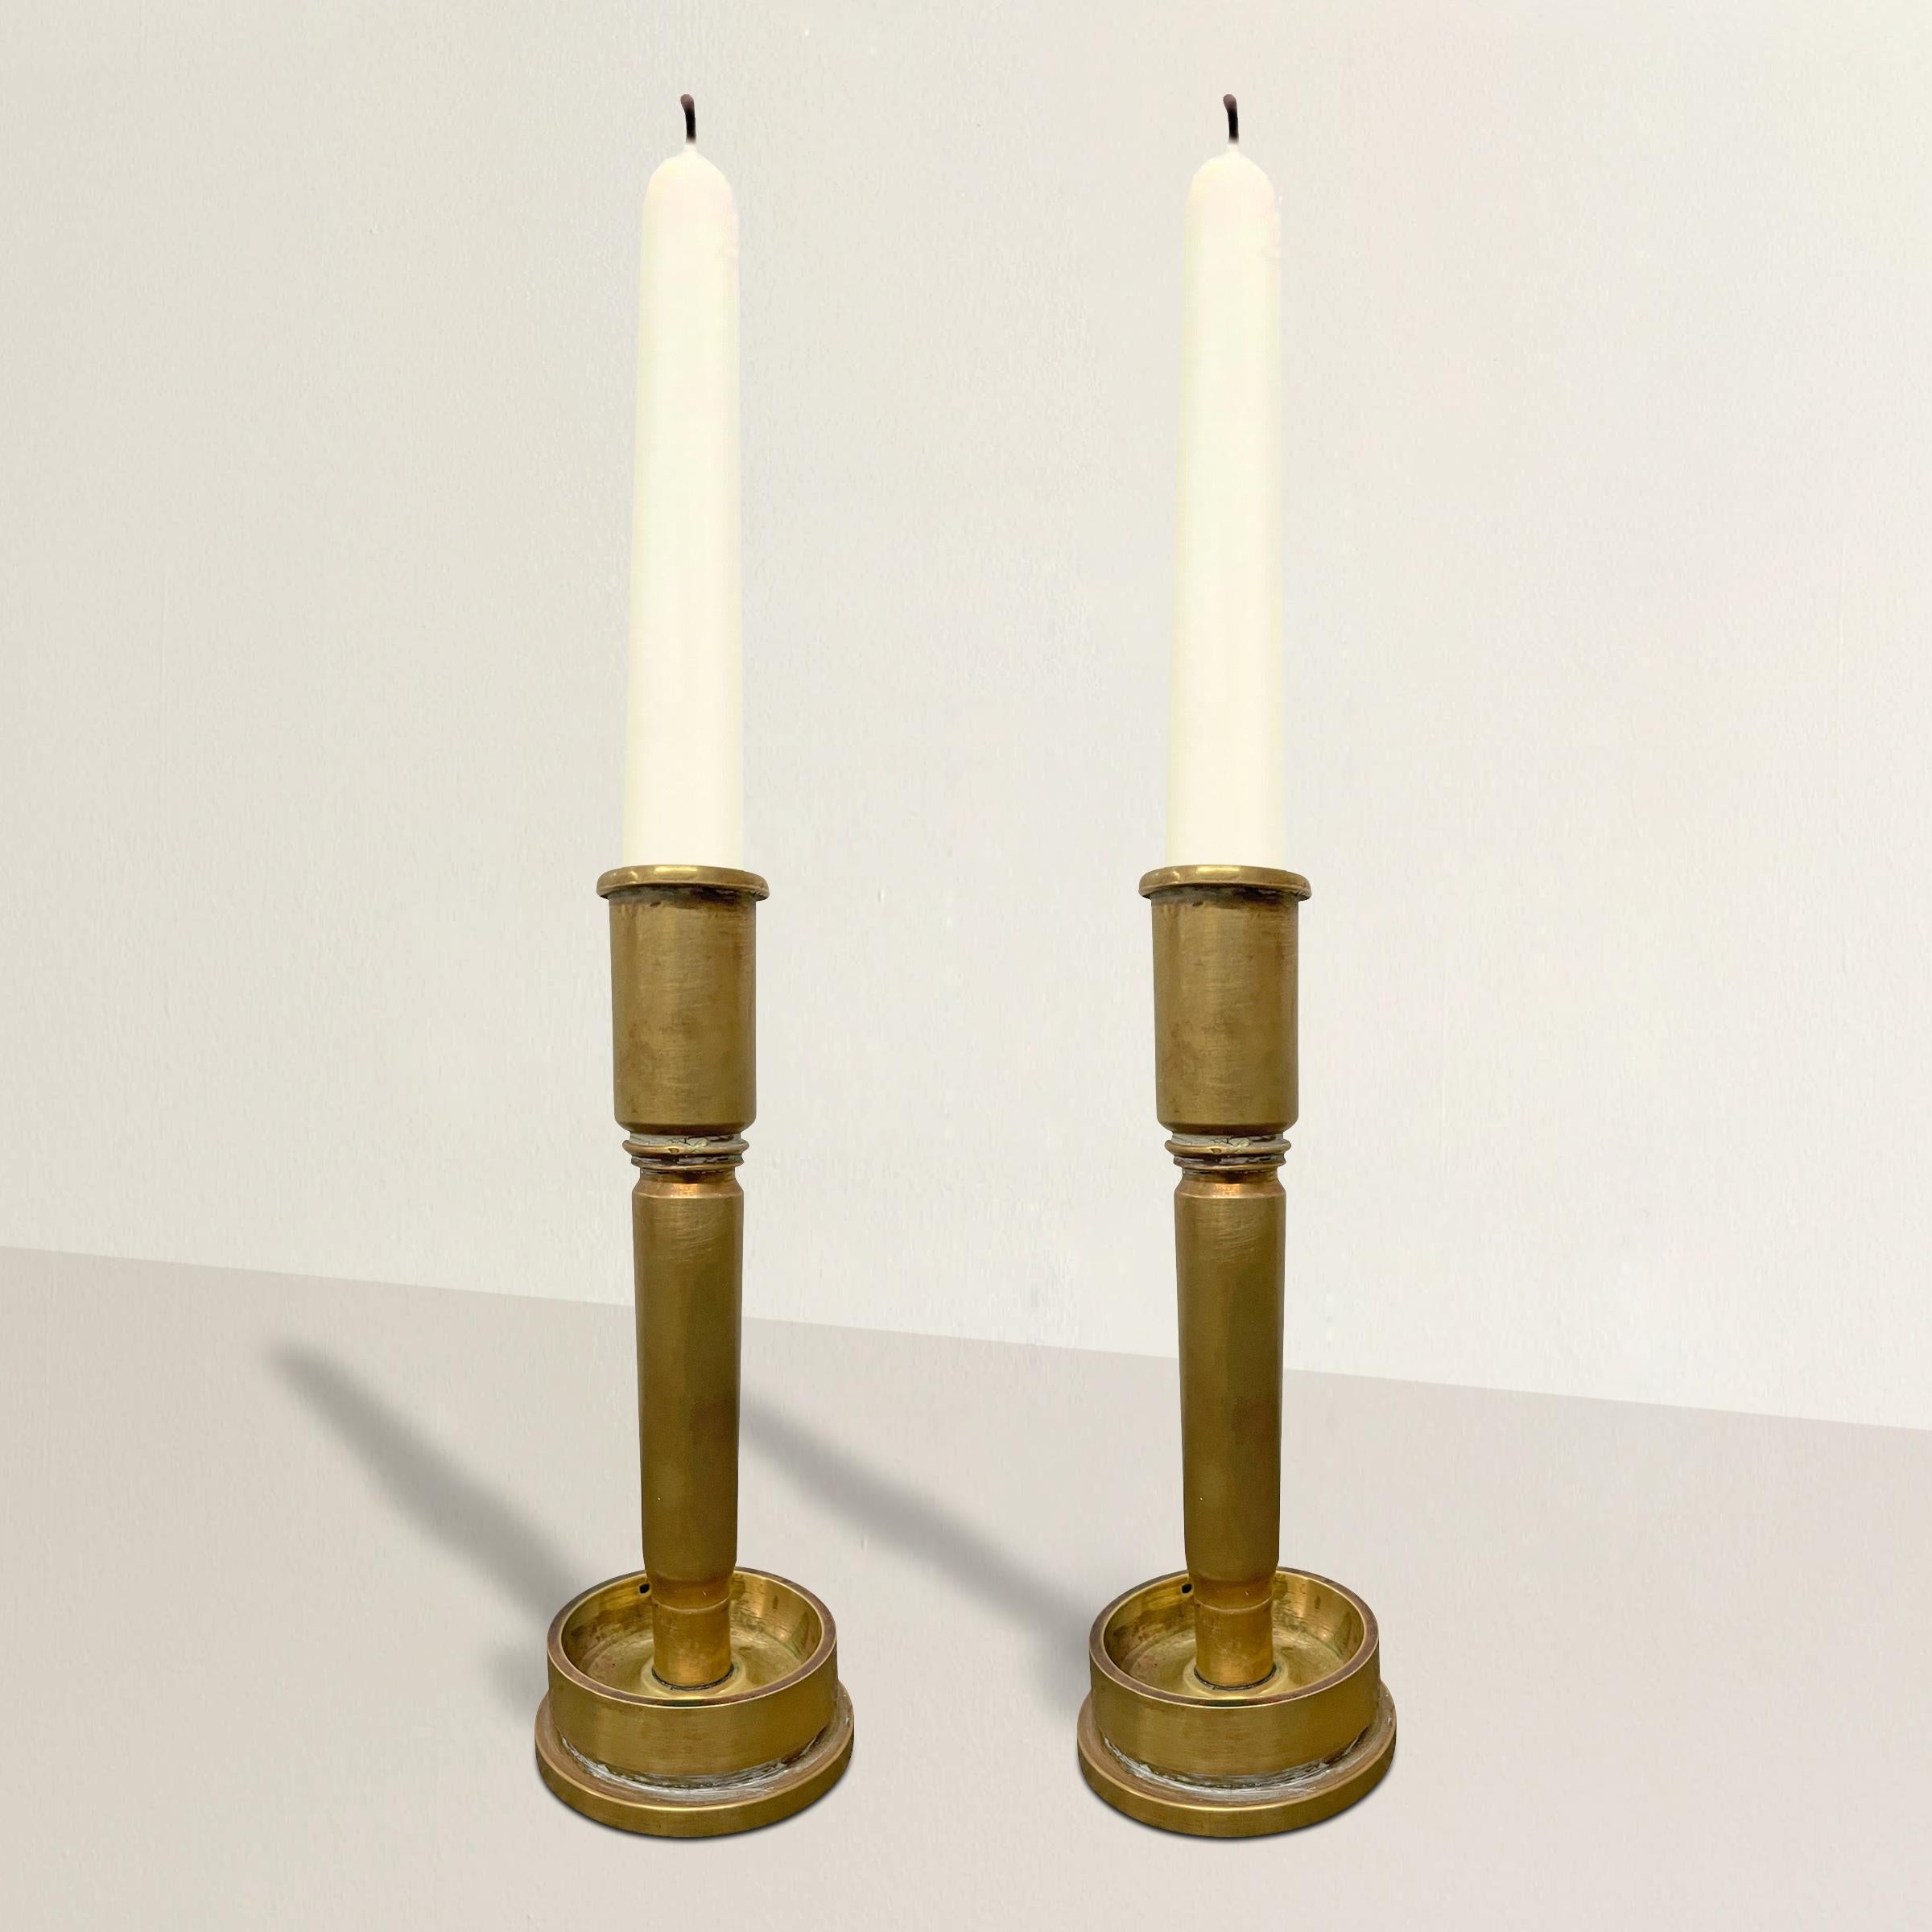 Ein wunderbares und zum Nachdenken anregendes Paar amerikanischer Trench Art-Kerzenhalter aus dem frühen 20. Jahrhundert, die aus den verbrauchten Messinghülsen von Marineartilleriegranaten hergestellt wurden.